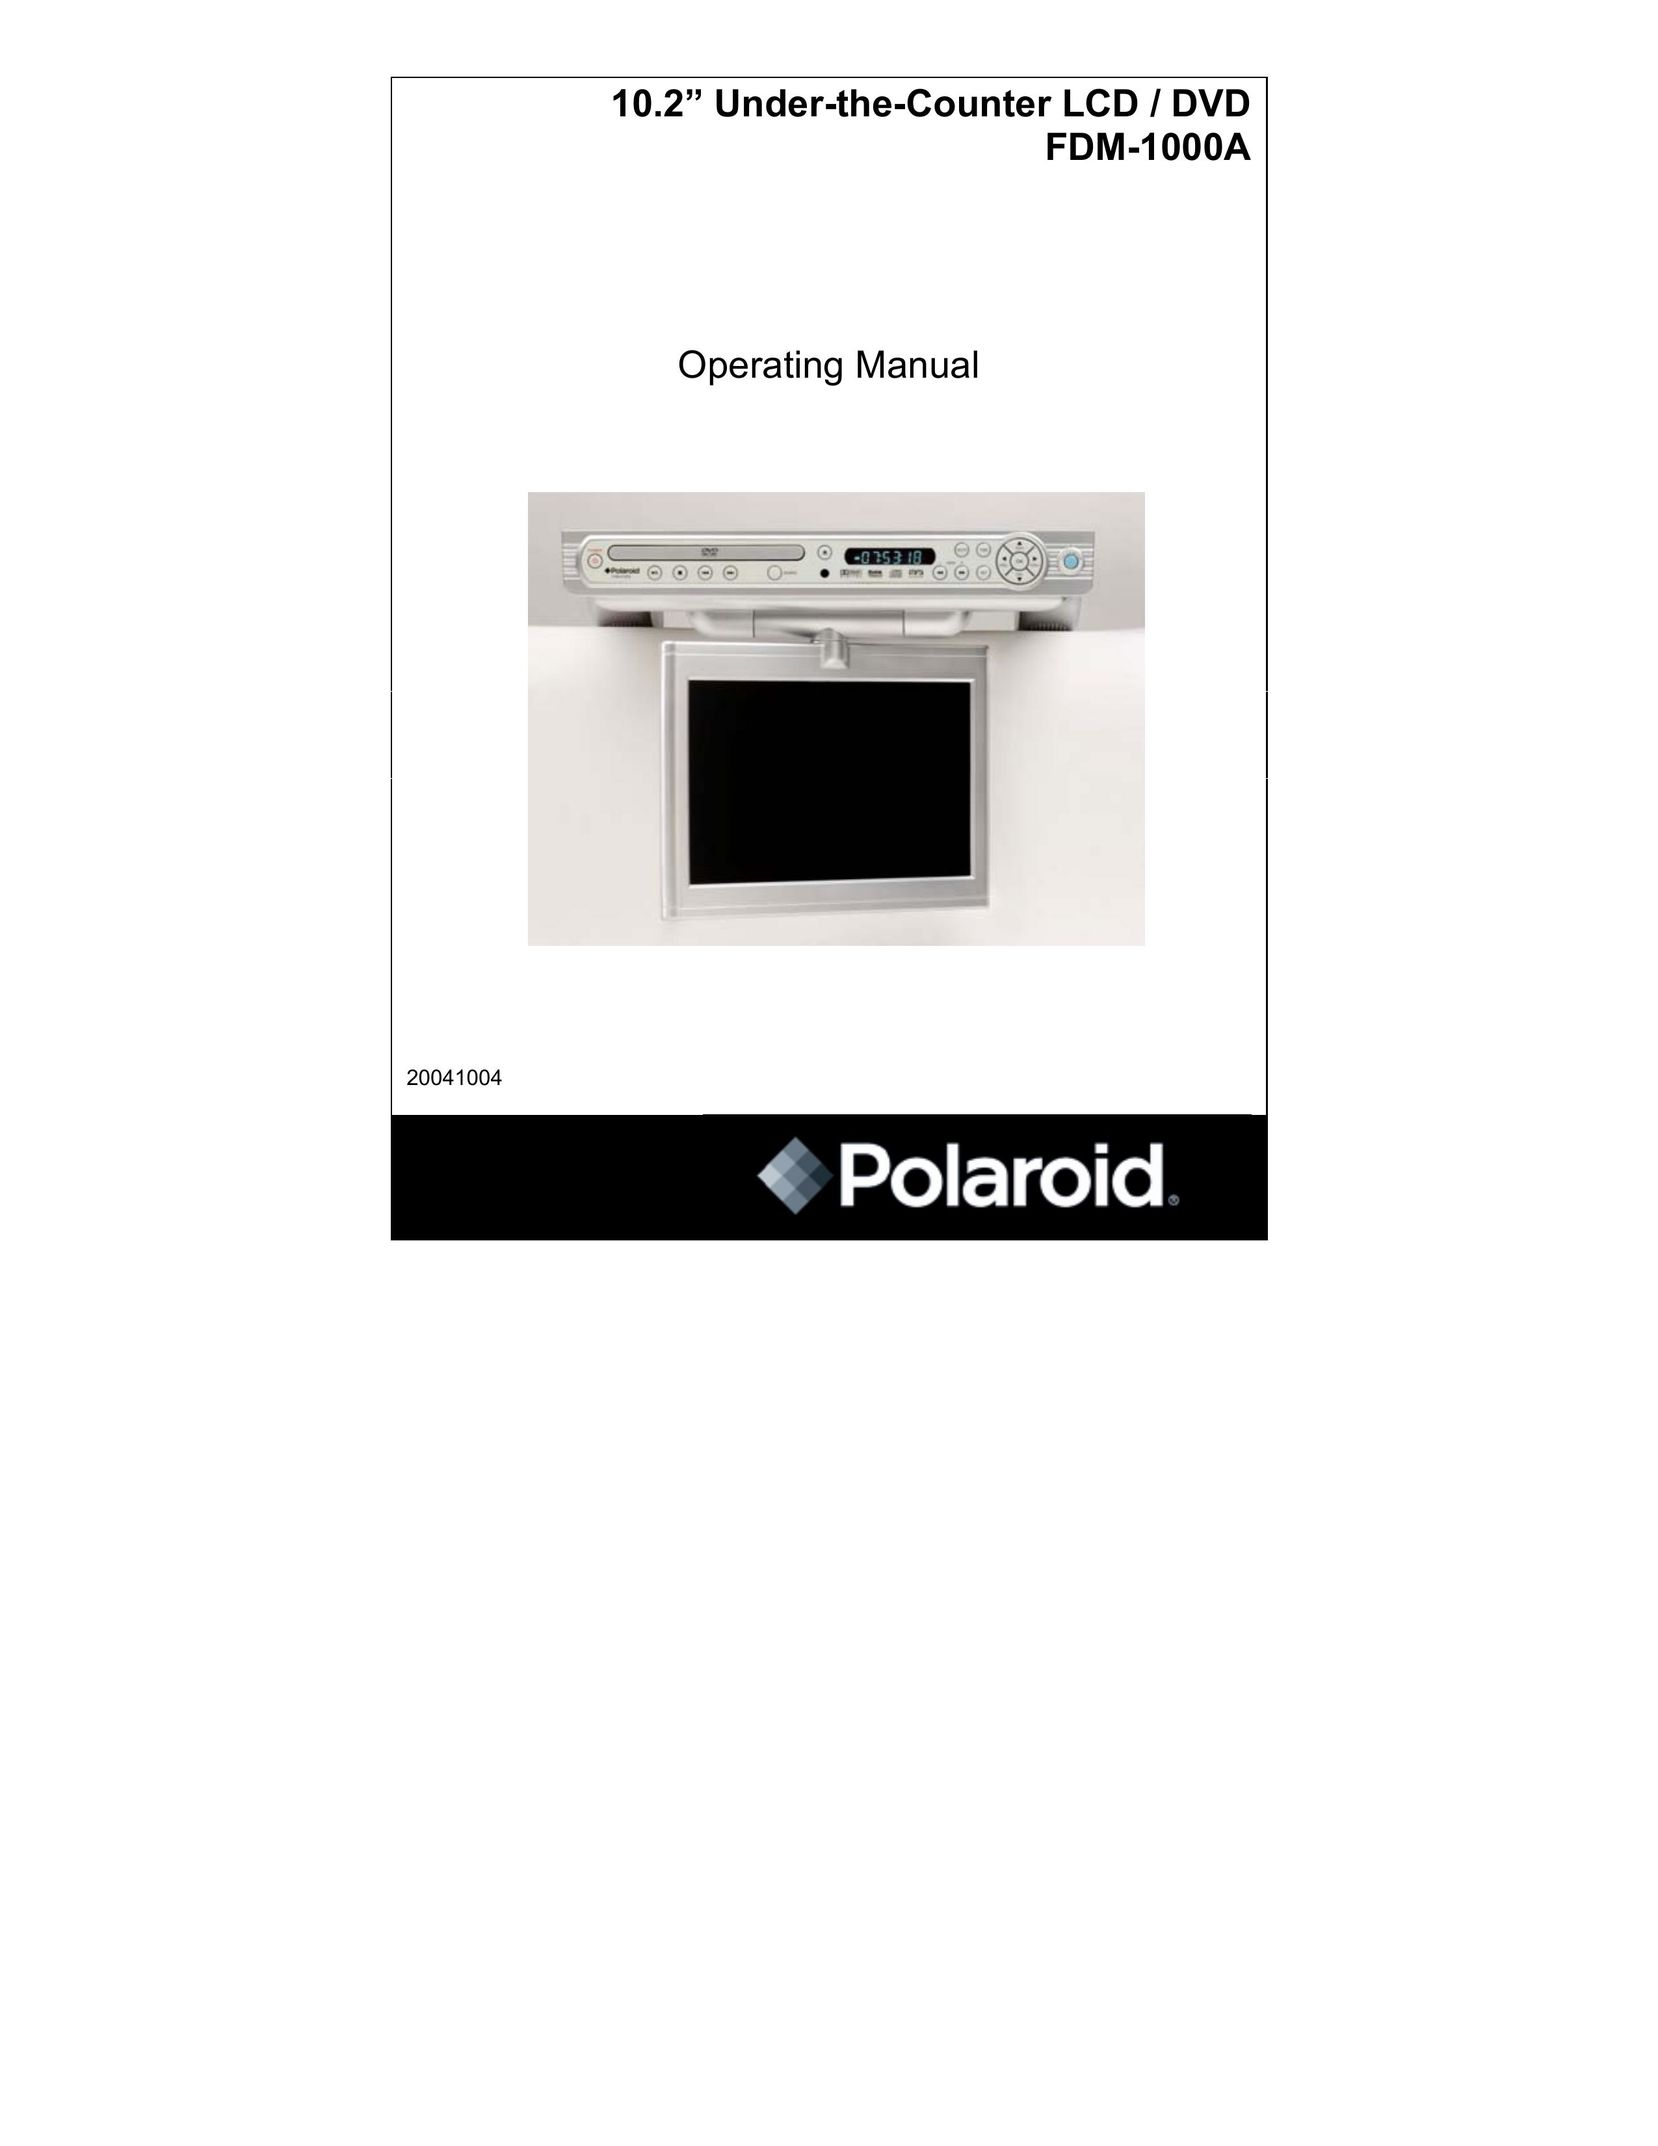 Polaroid FDM-1000A TV DVD Combo User Manual